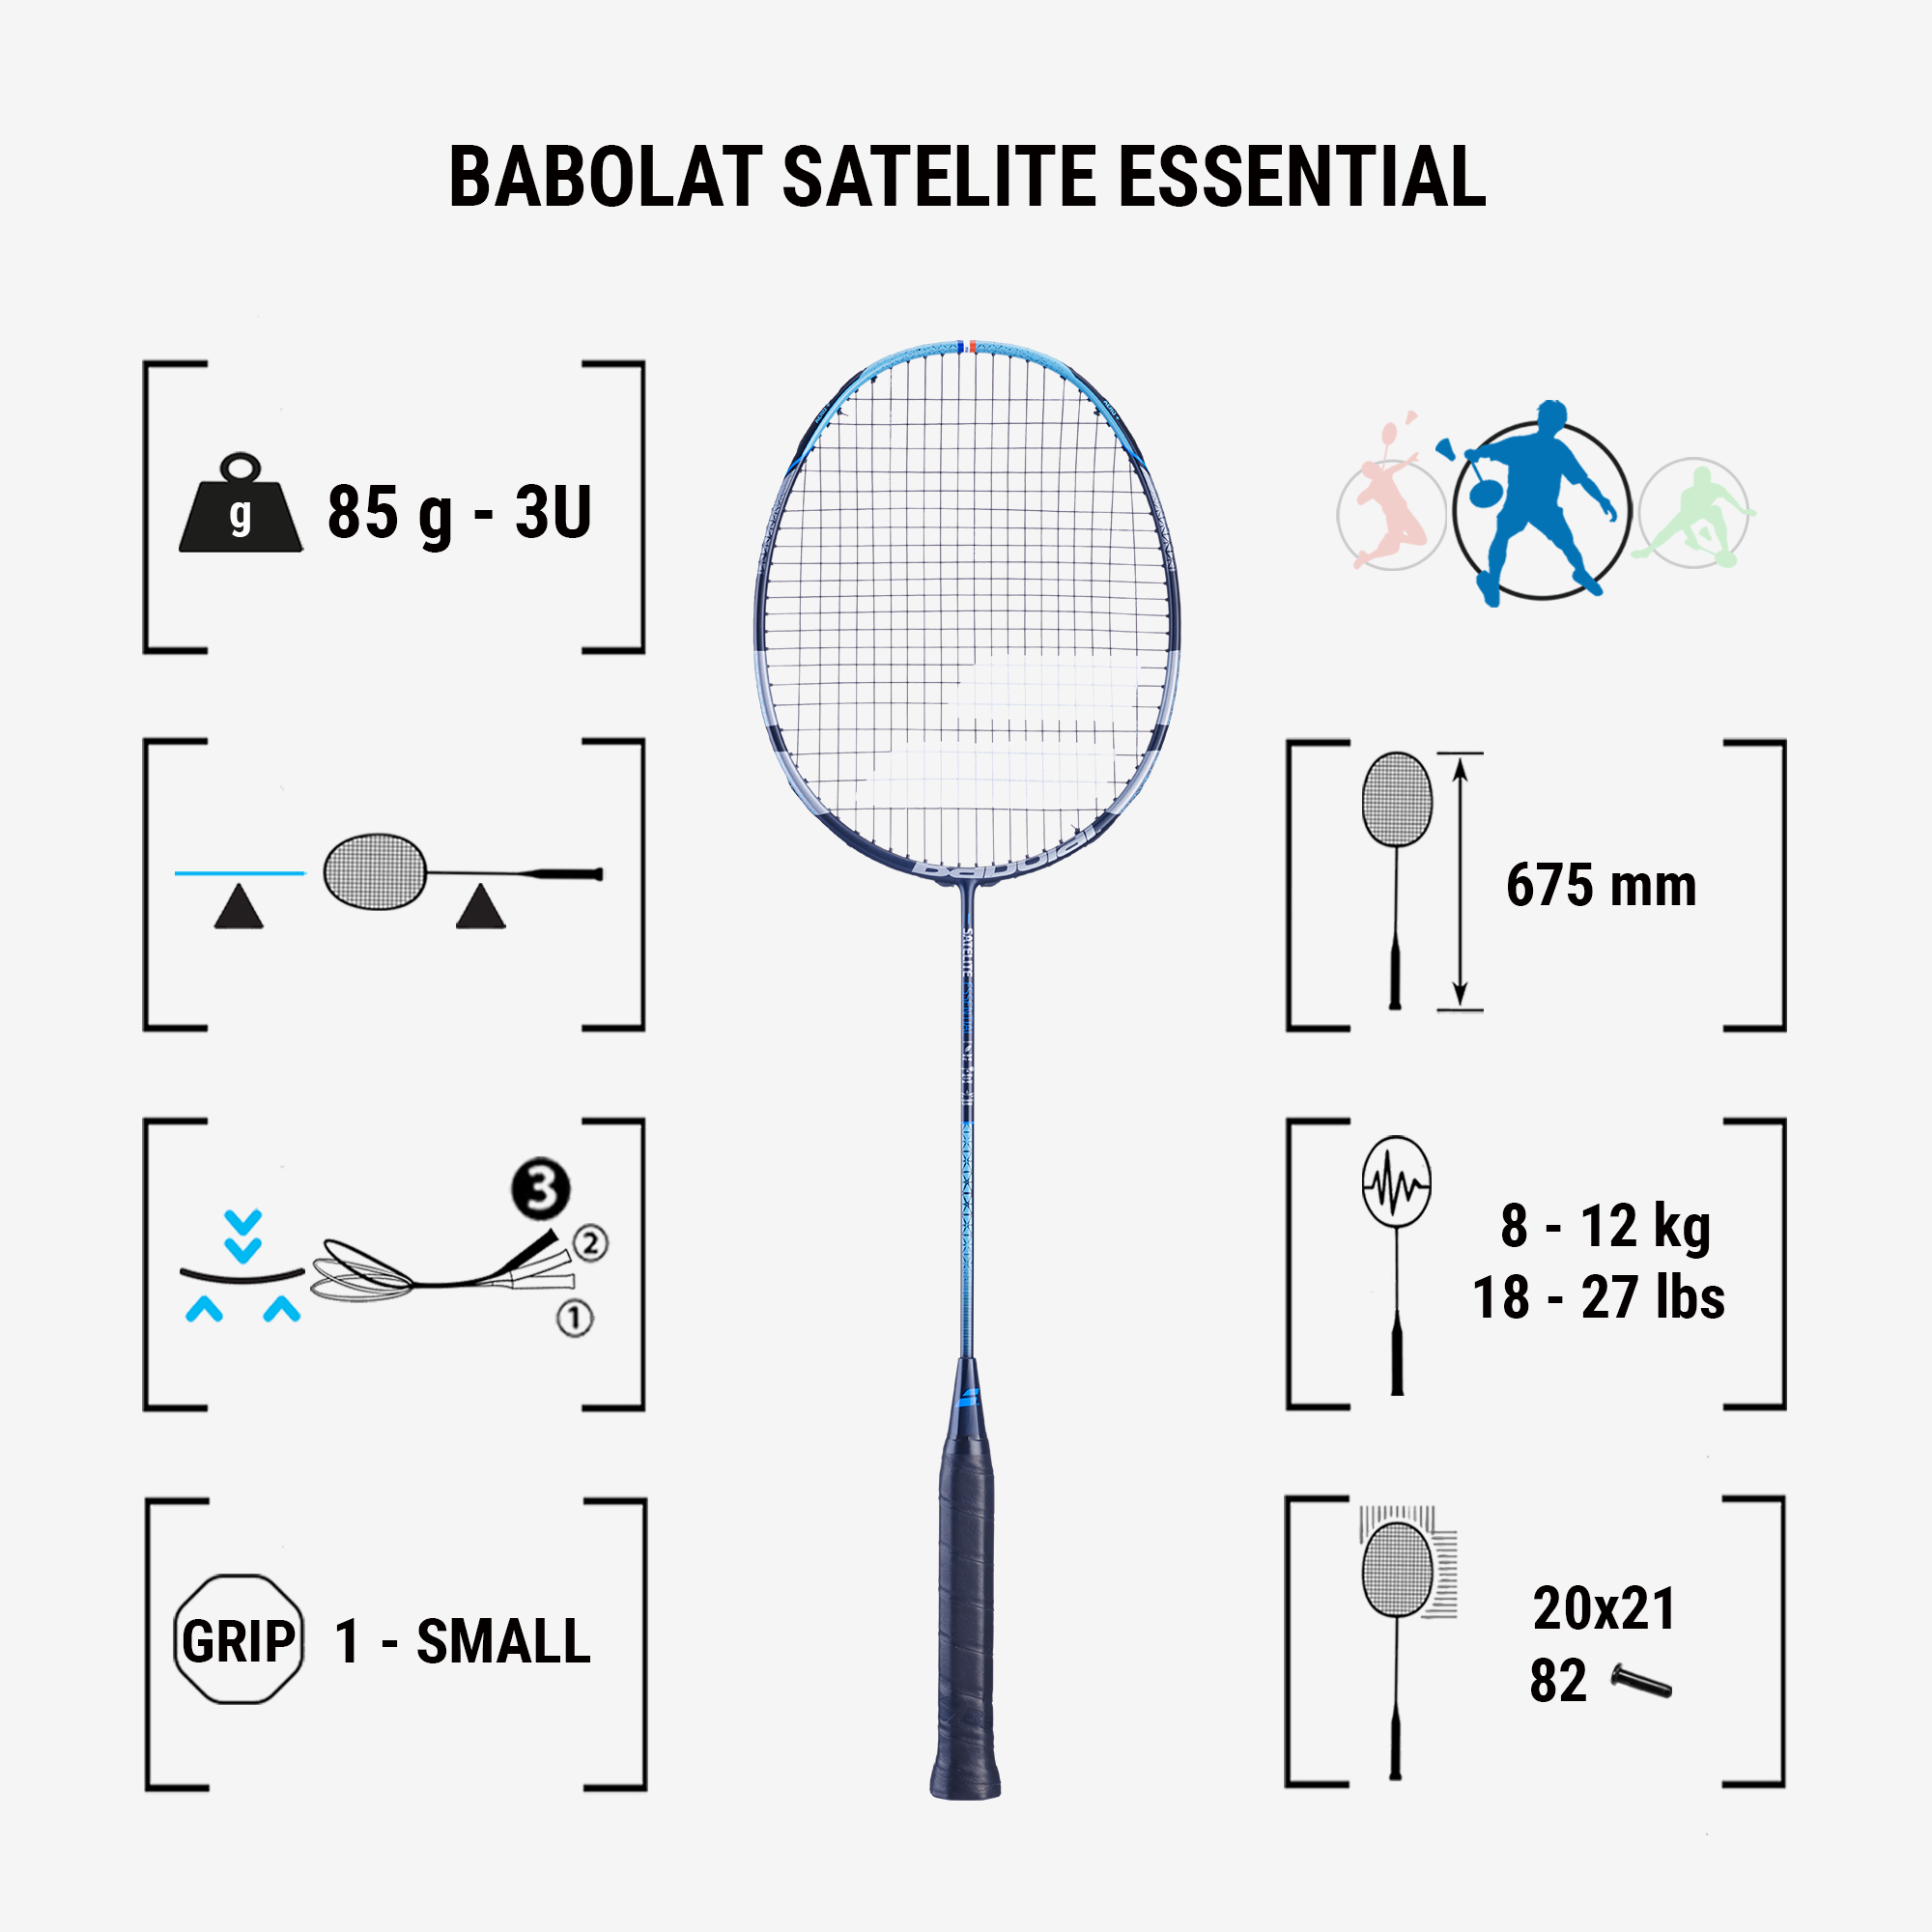 Raquette de badminton Babolat Satelite origine Essential (cordée) 2022